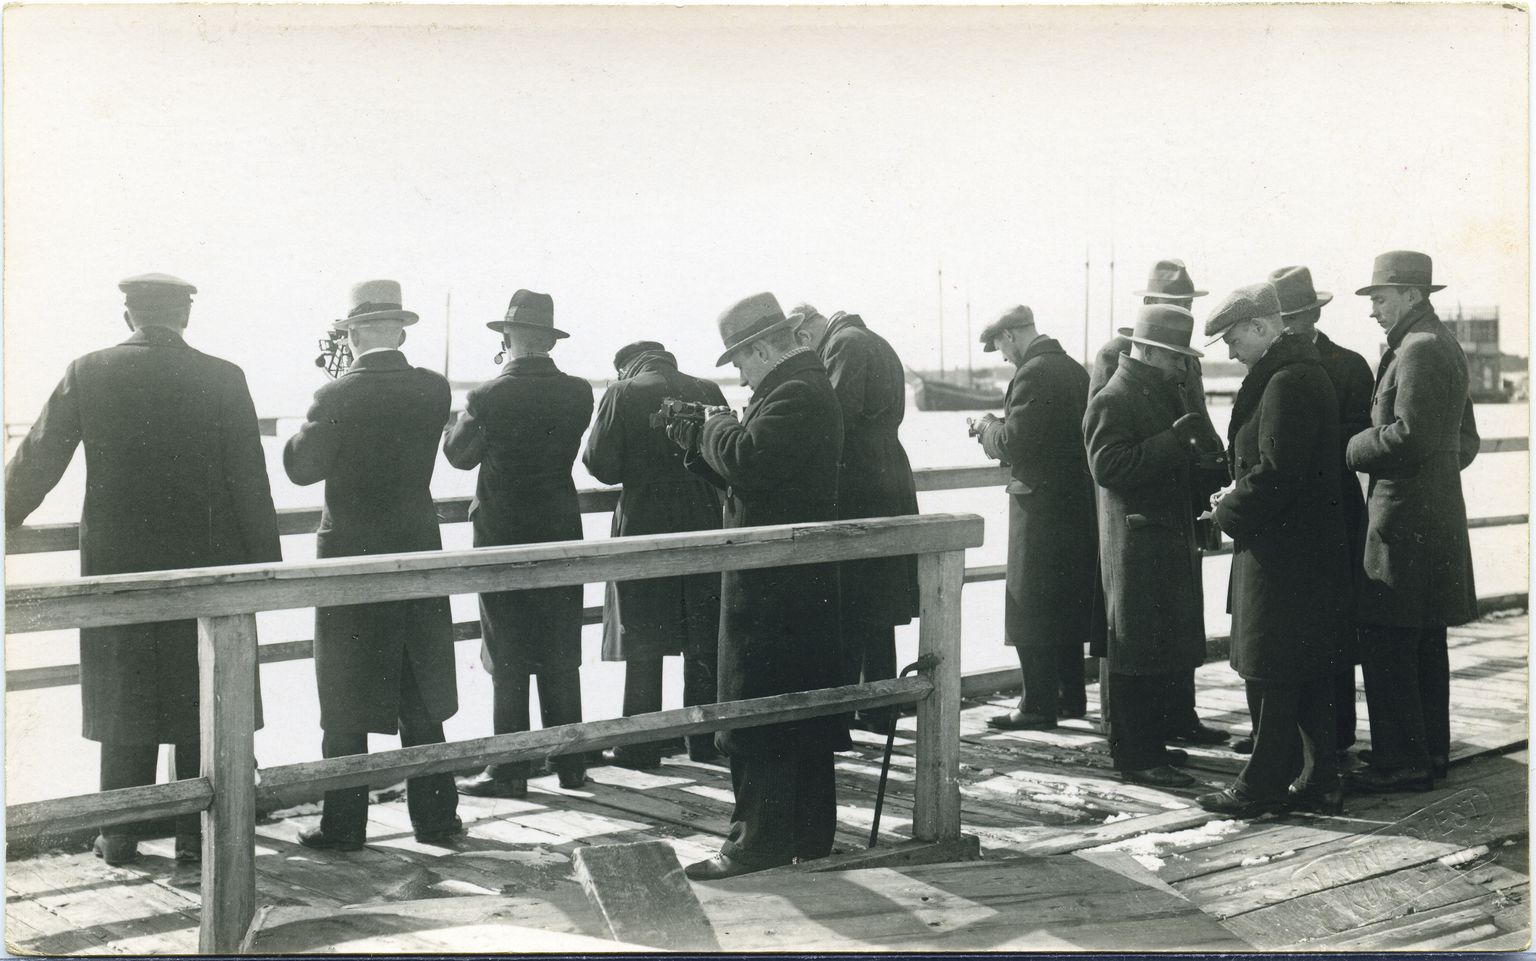 ÕPILASED jahtklubi sillal sekstantidega töötamas. Ca 1935. aastal.